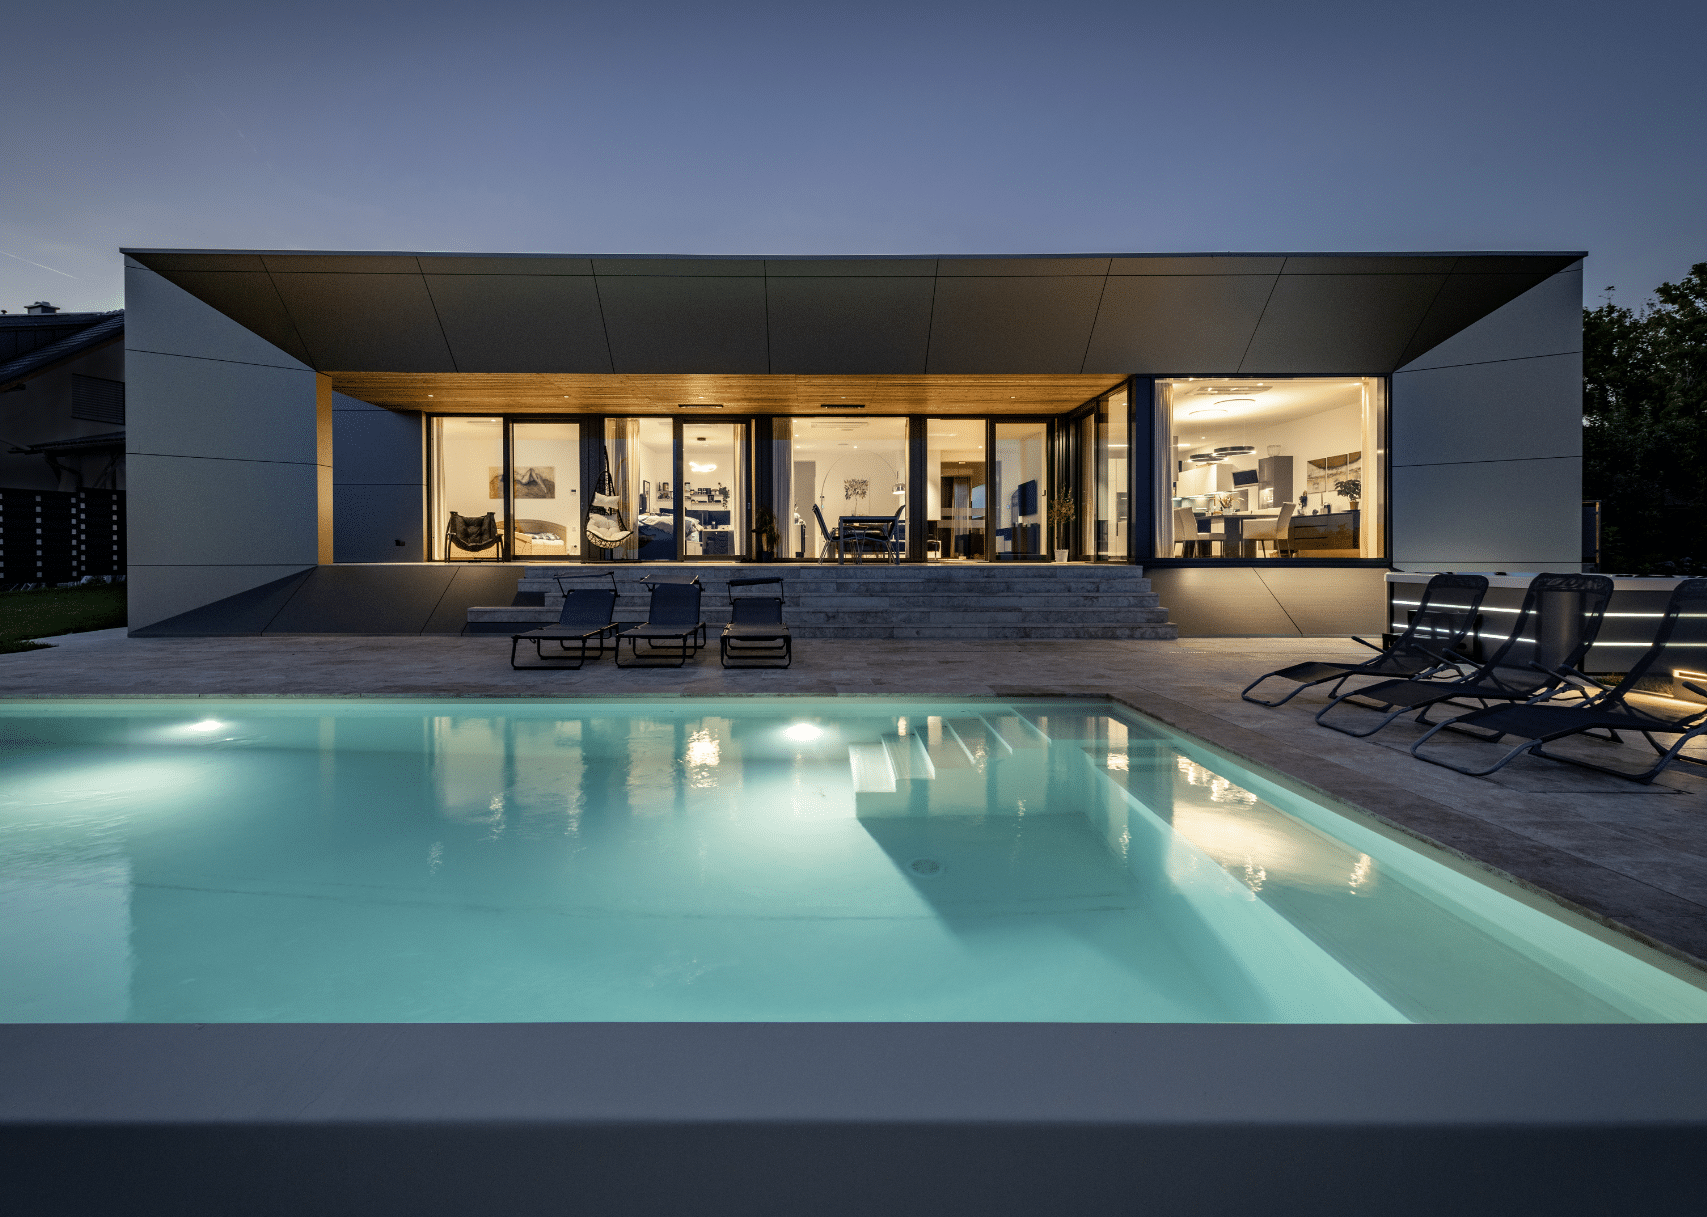 AL ARCHITEKT ZT GmbH zeigt ein sehr modernes, kubisches Einfamilienhaus mit aufregender Fassadengestaltung, Terrasse und großem Swimmingpool.